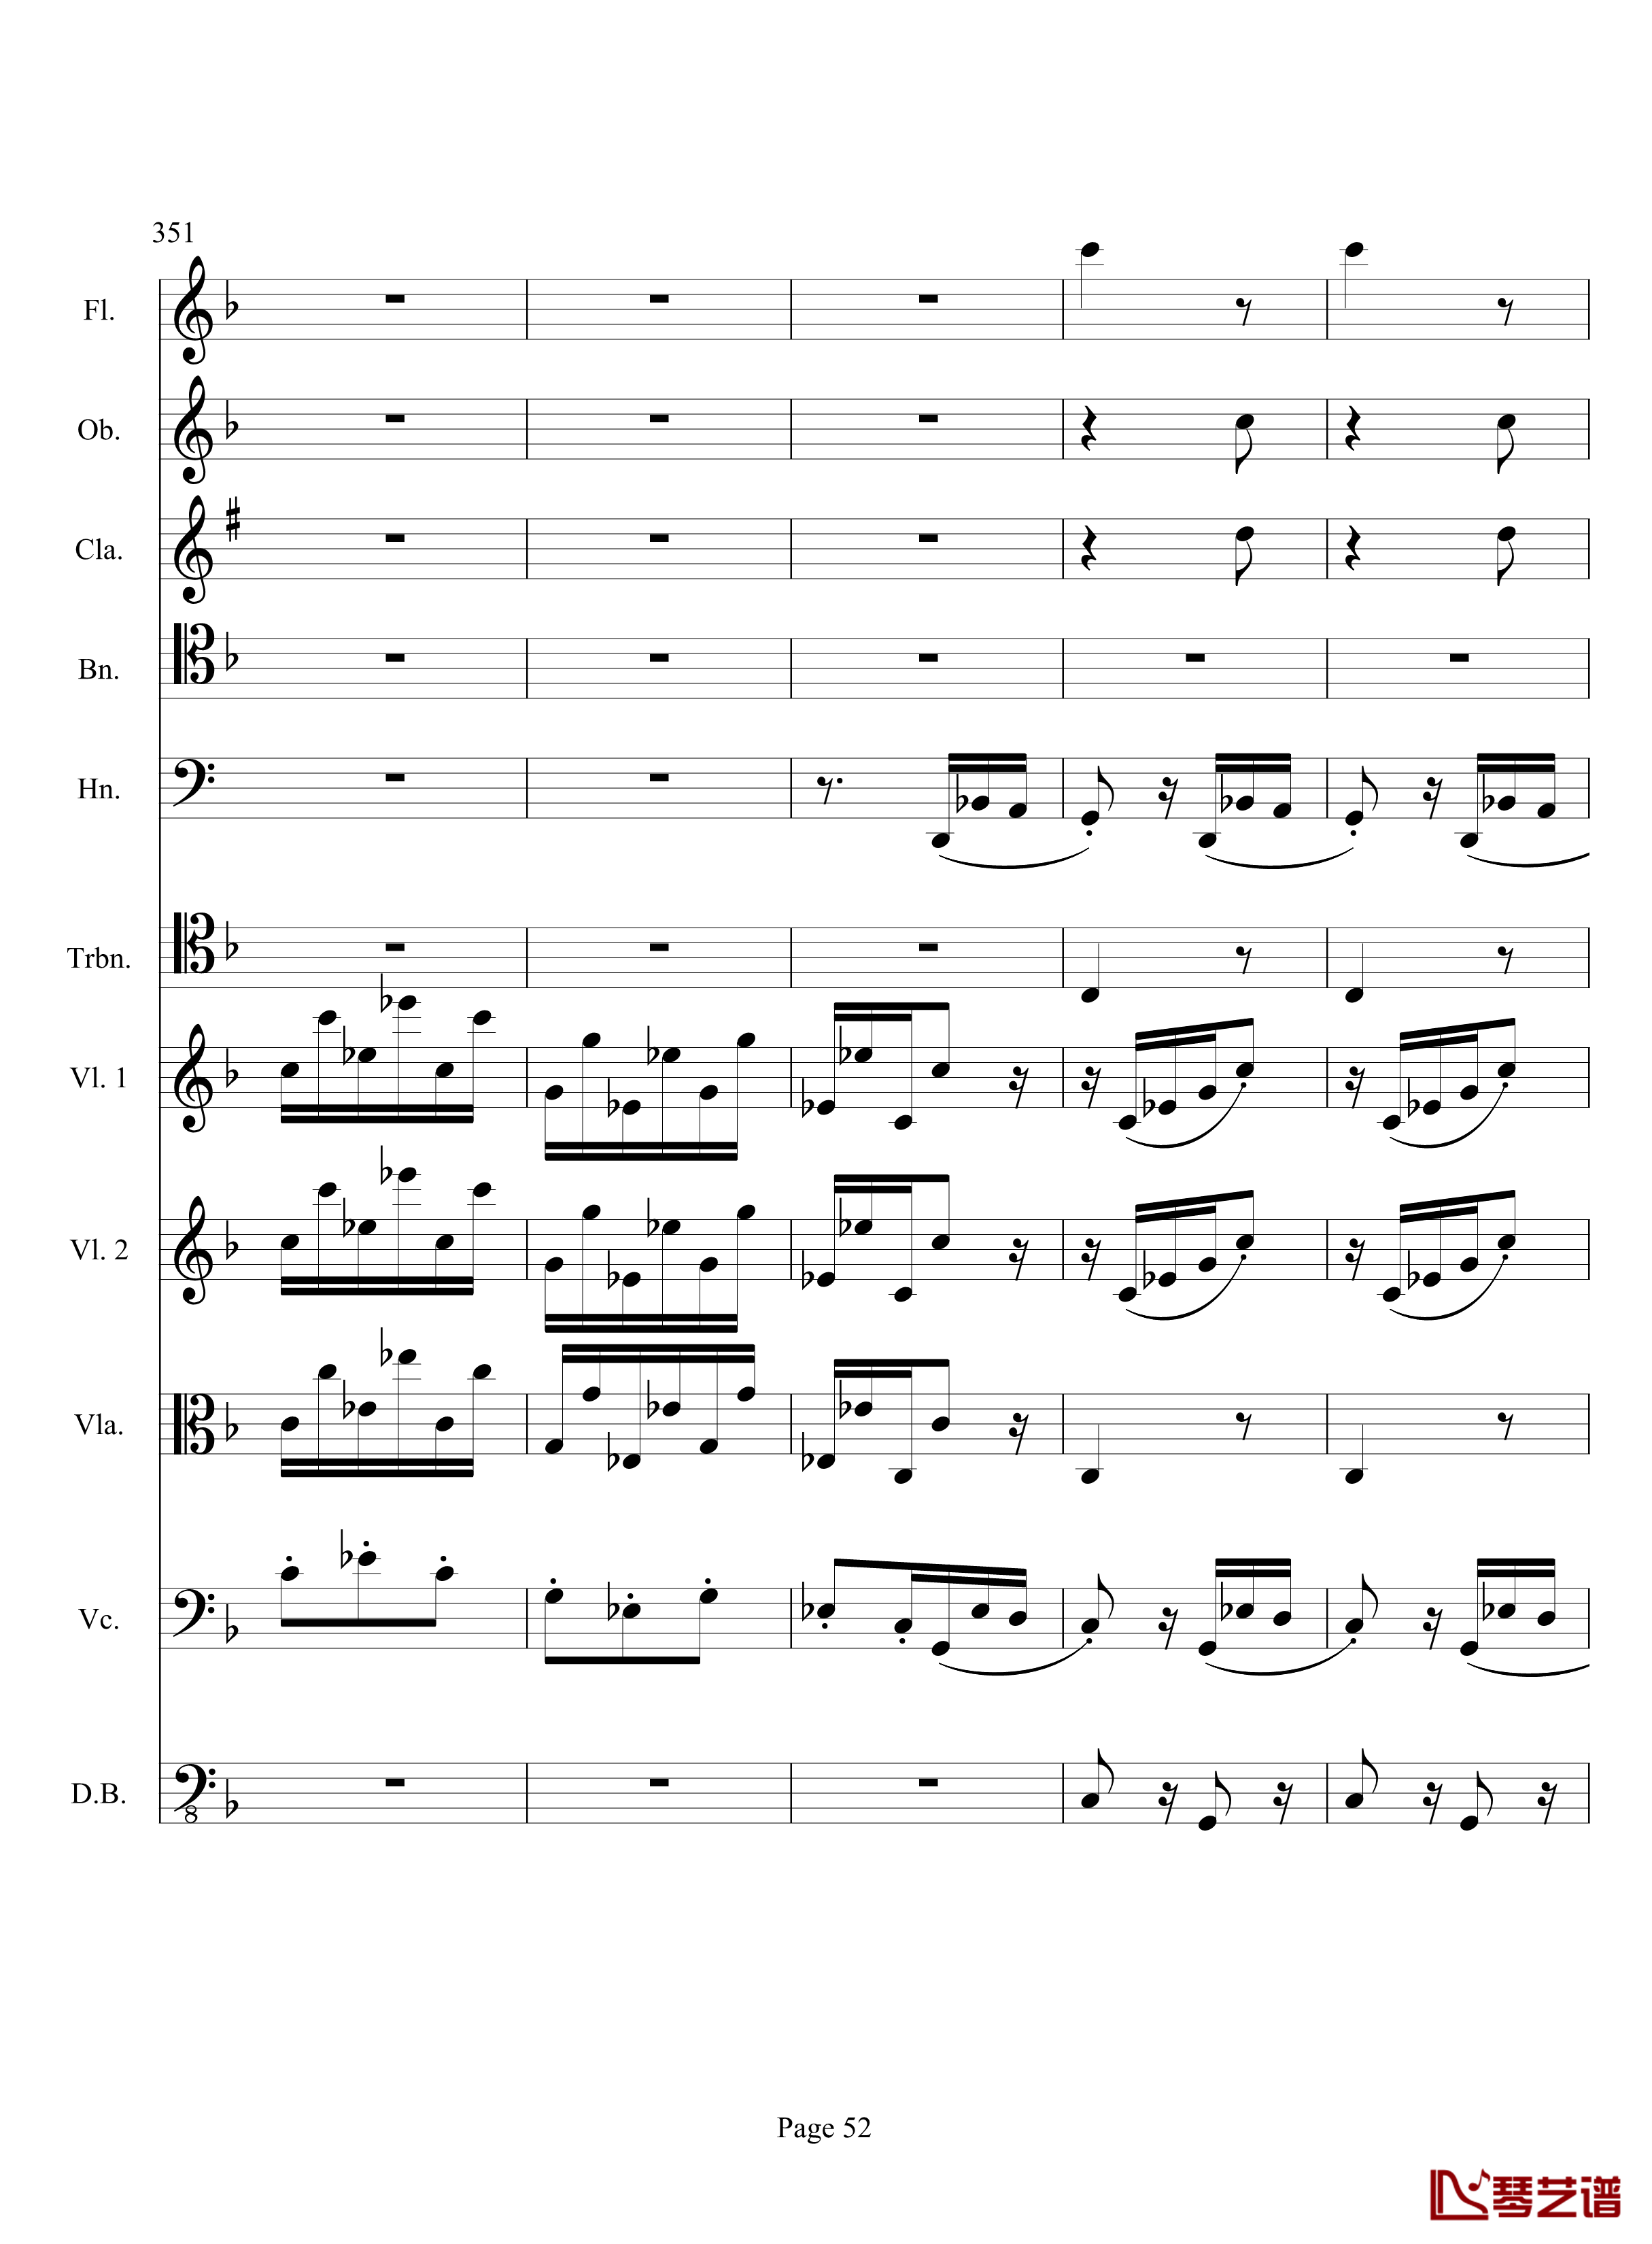 奏鸣曲之交响钢琴谱-第17首-Ⅲ-贝多芬-beethoven52